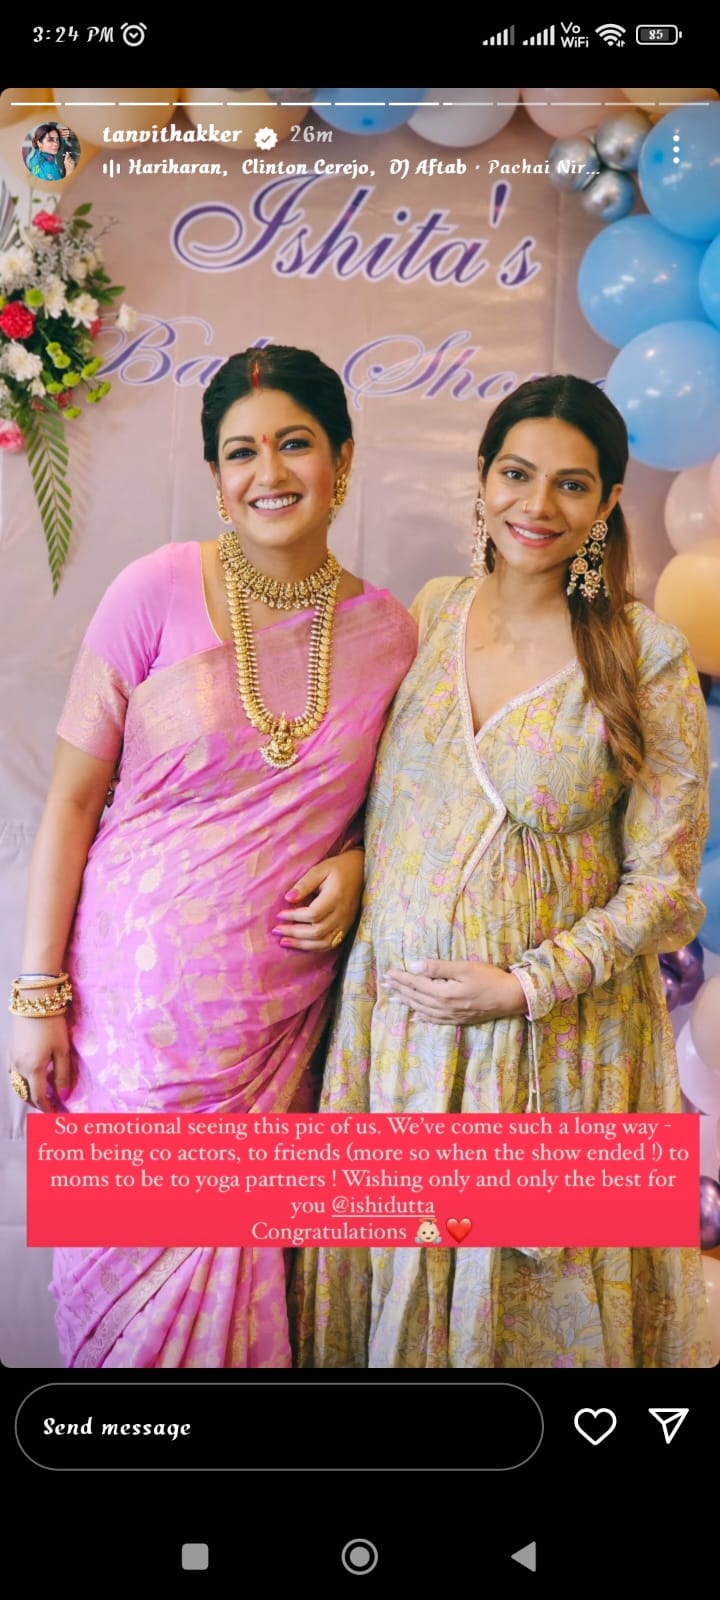 Ishita Dutta Baby Shower: प्रेग्नेंट इशिता दत्ता की गोद भराई रस्म की तस्वीरें आईं सामने, पिंक साड़ी और सोने के गहनों में लगीं बेहद सुंदर